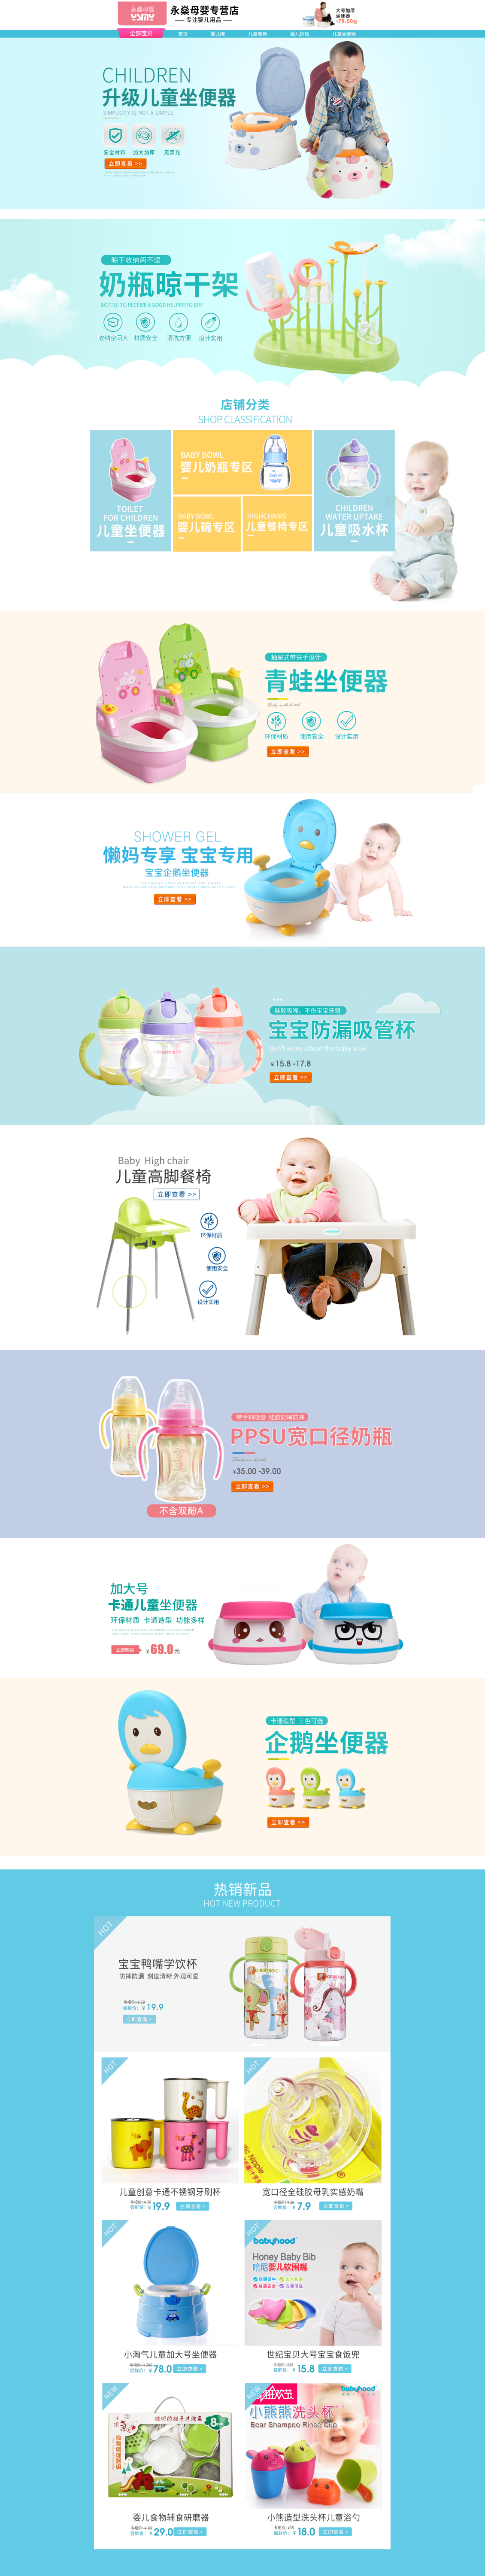 淘宝美工白鱼天猫母婴用品海报首页设计品牌 宝宝用品作品